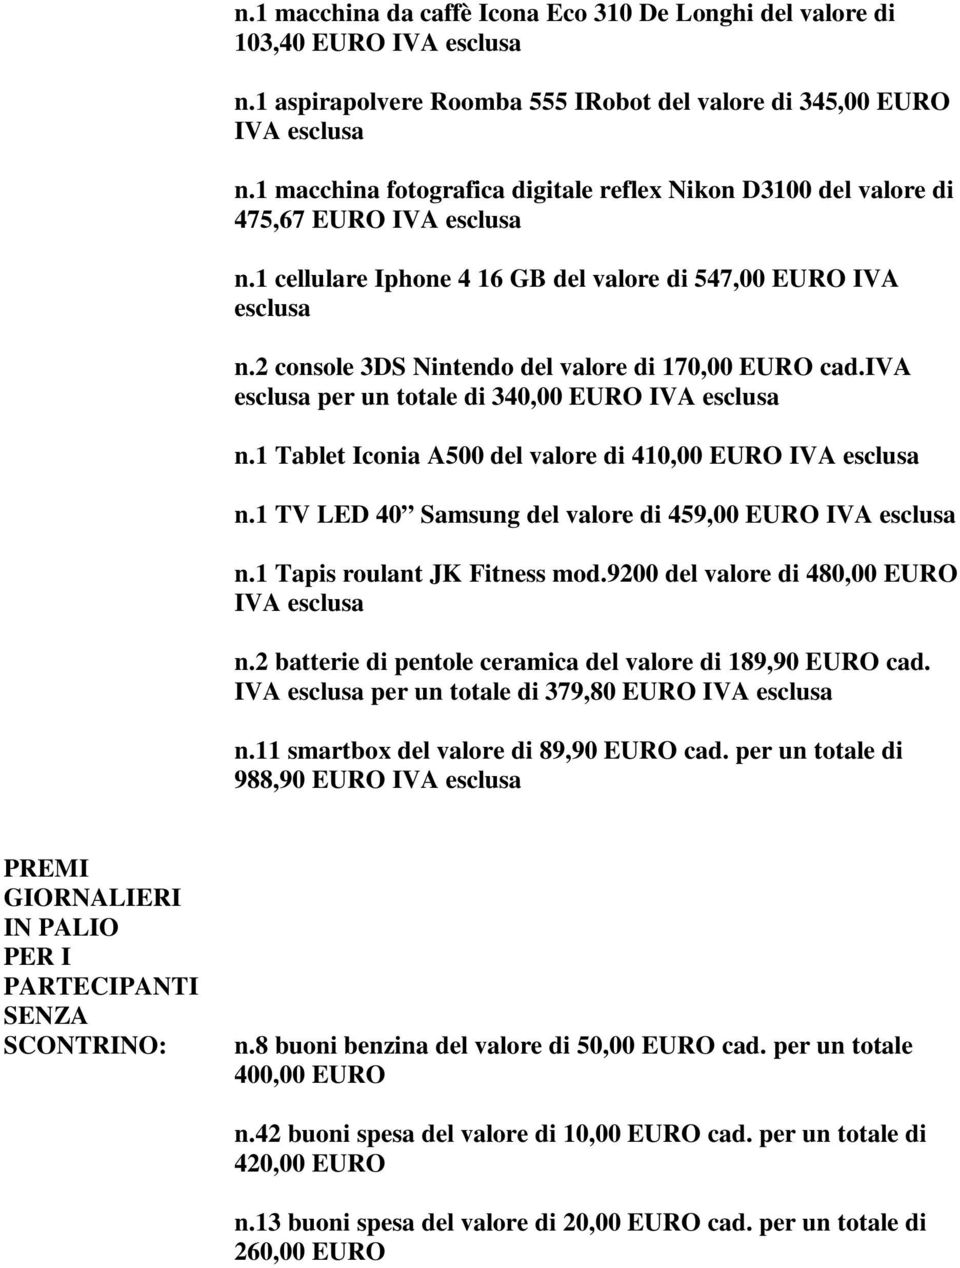 2 console 3DS Nintendo del valore di 170,00 EURO cad.iva esclusa per un totale di 340,00 EURO IVA esclusa n.1 Tablet Iconia A500 del valore di 410,00 EURO IVA esclusa n.